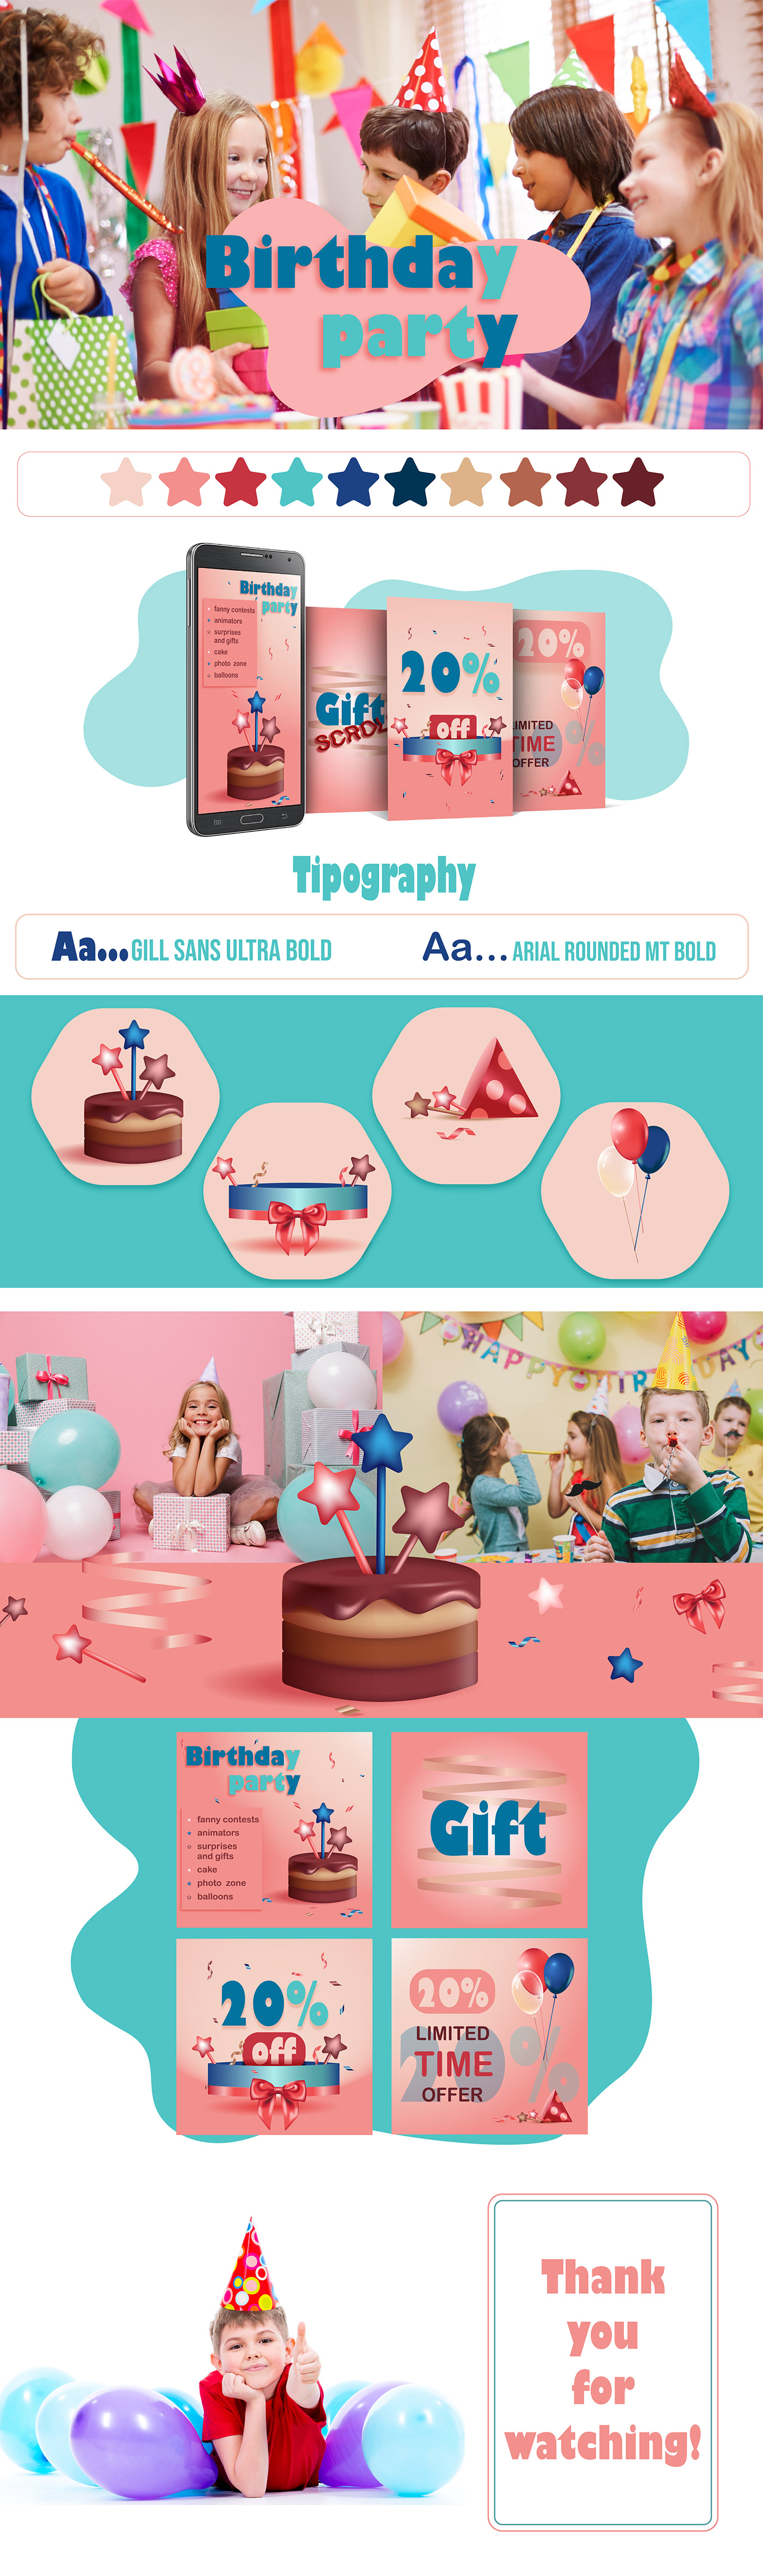 Instagram Post birthday party Birthday celebration party Socialmedia ILLUSTRATION  vector art mesh eventagency